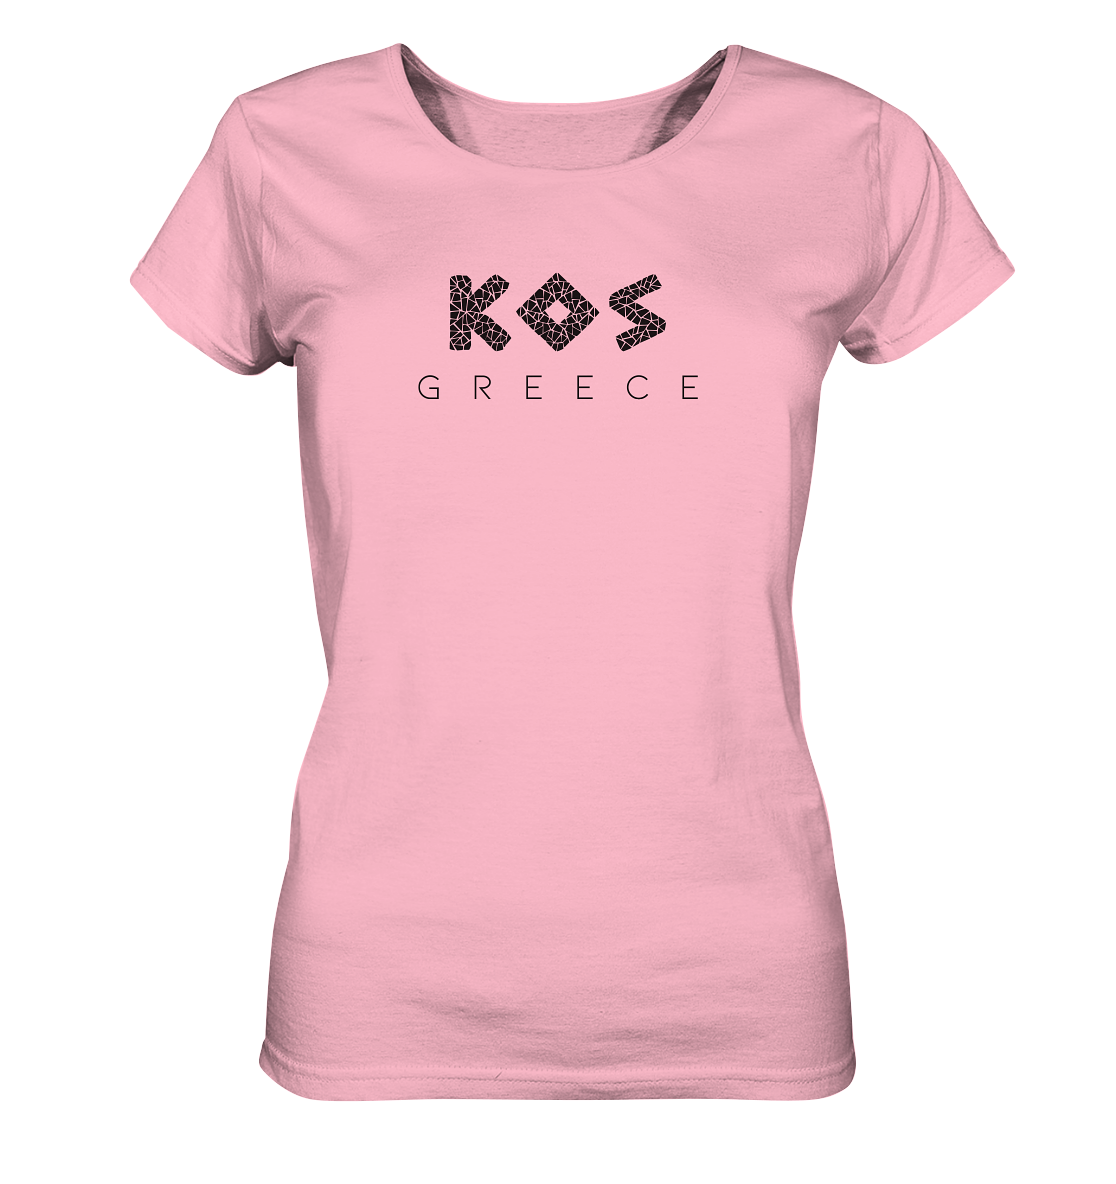 Kos Greece Mosaic - Ladies Organic Shirt